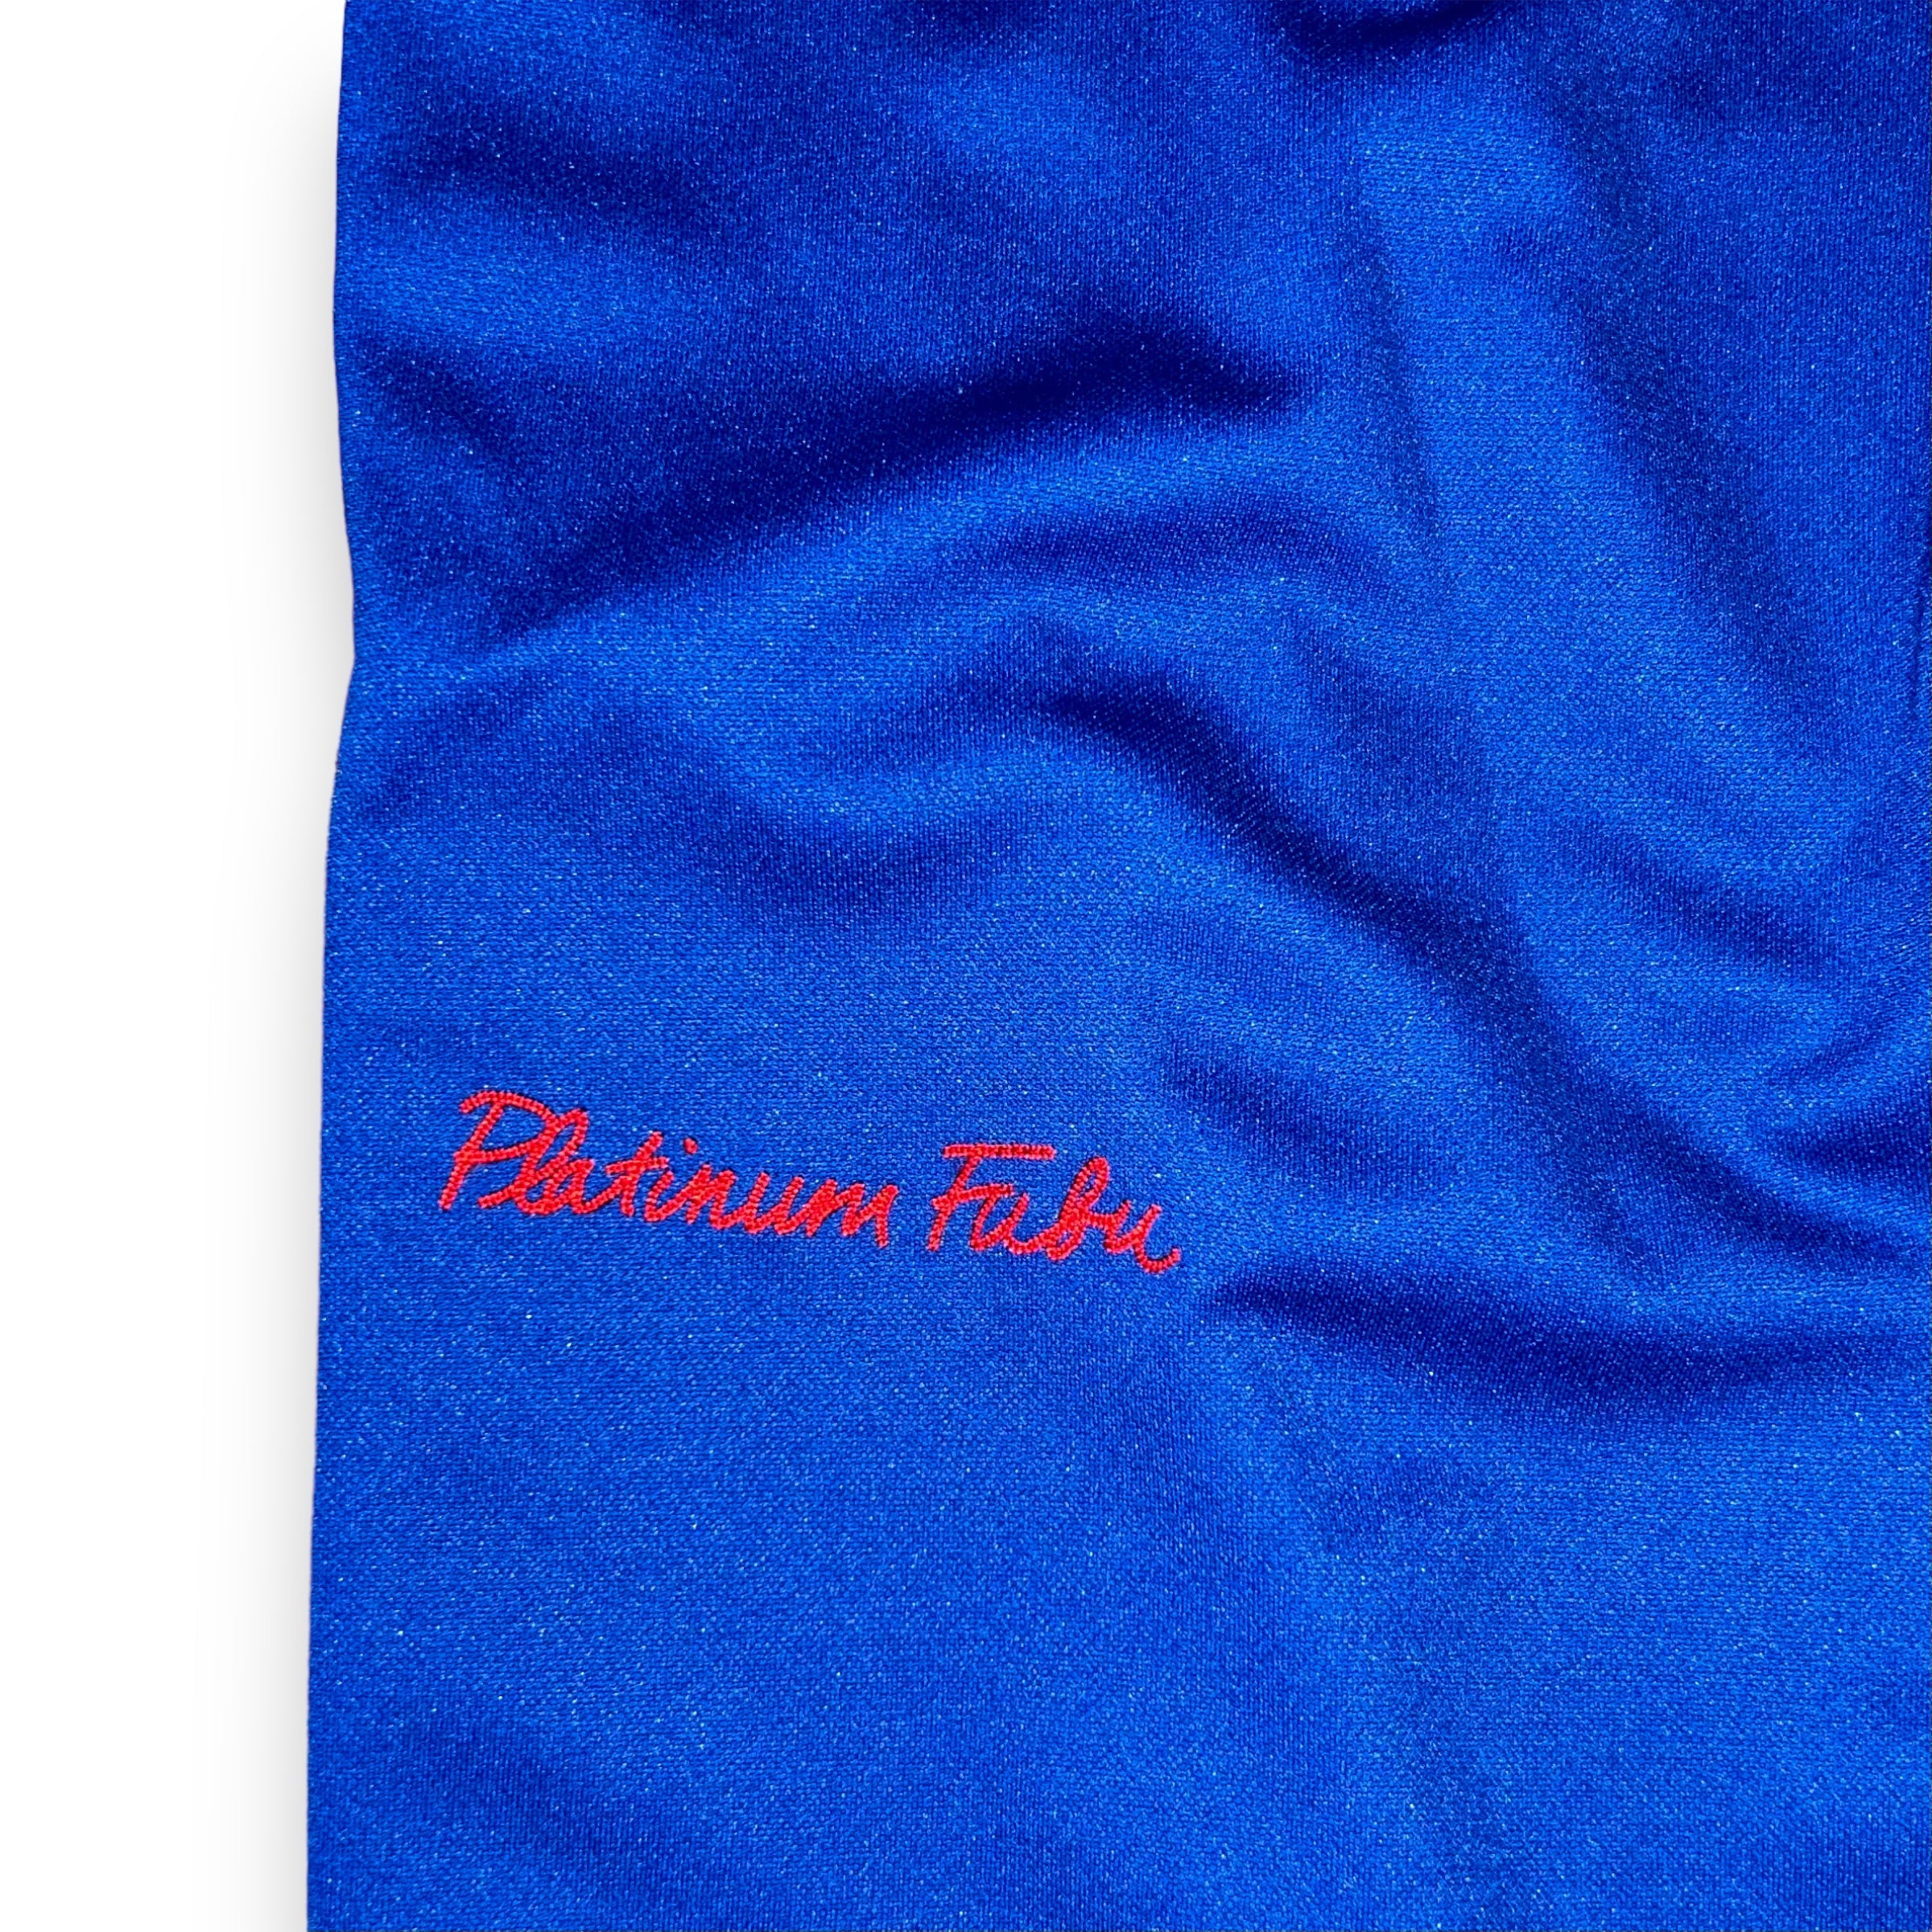 Pantaloni Platinum Fubu Harlem Globetrotters Vintage  (L)